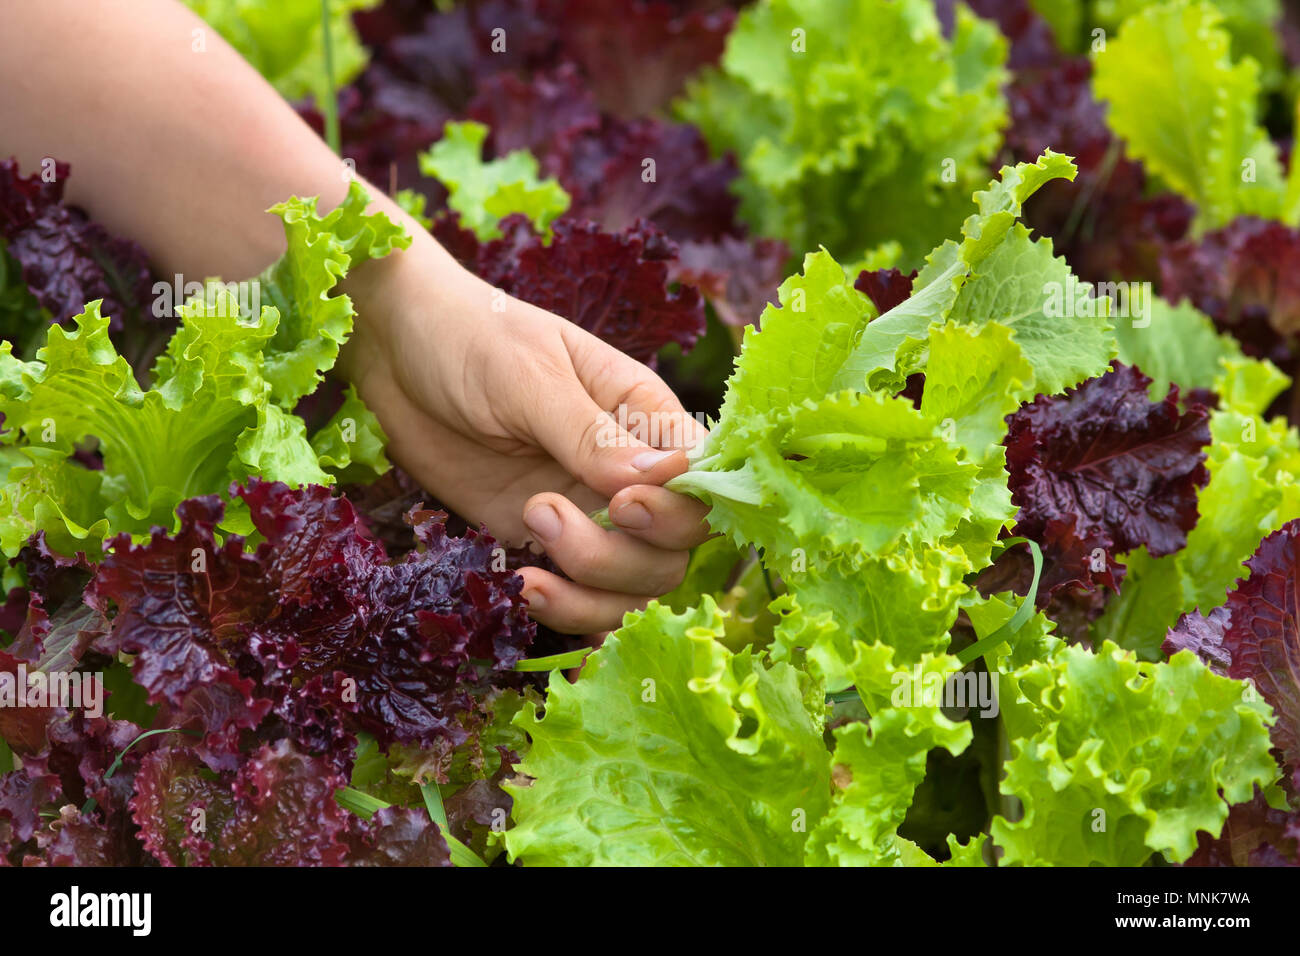 hand picking lettuce in the vegetable garden Stock Photo